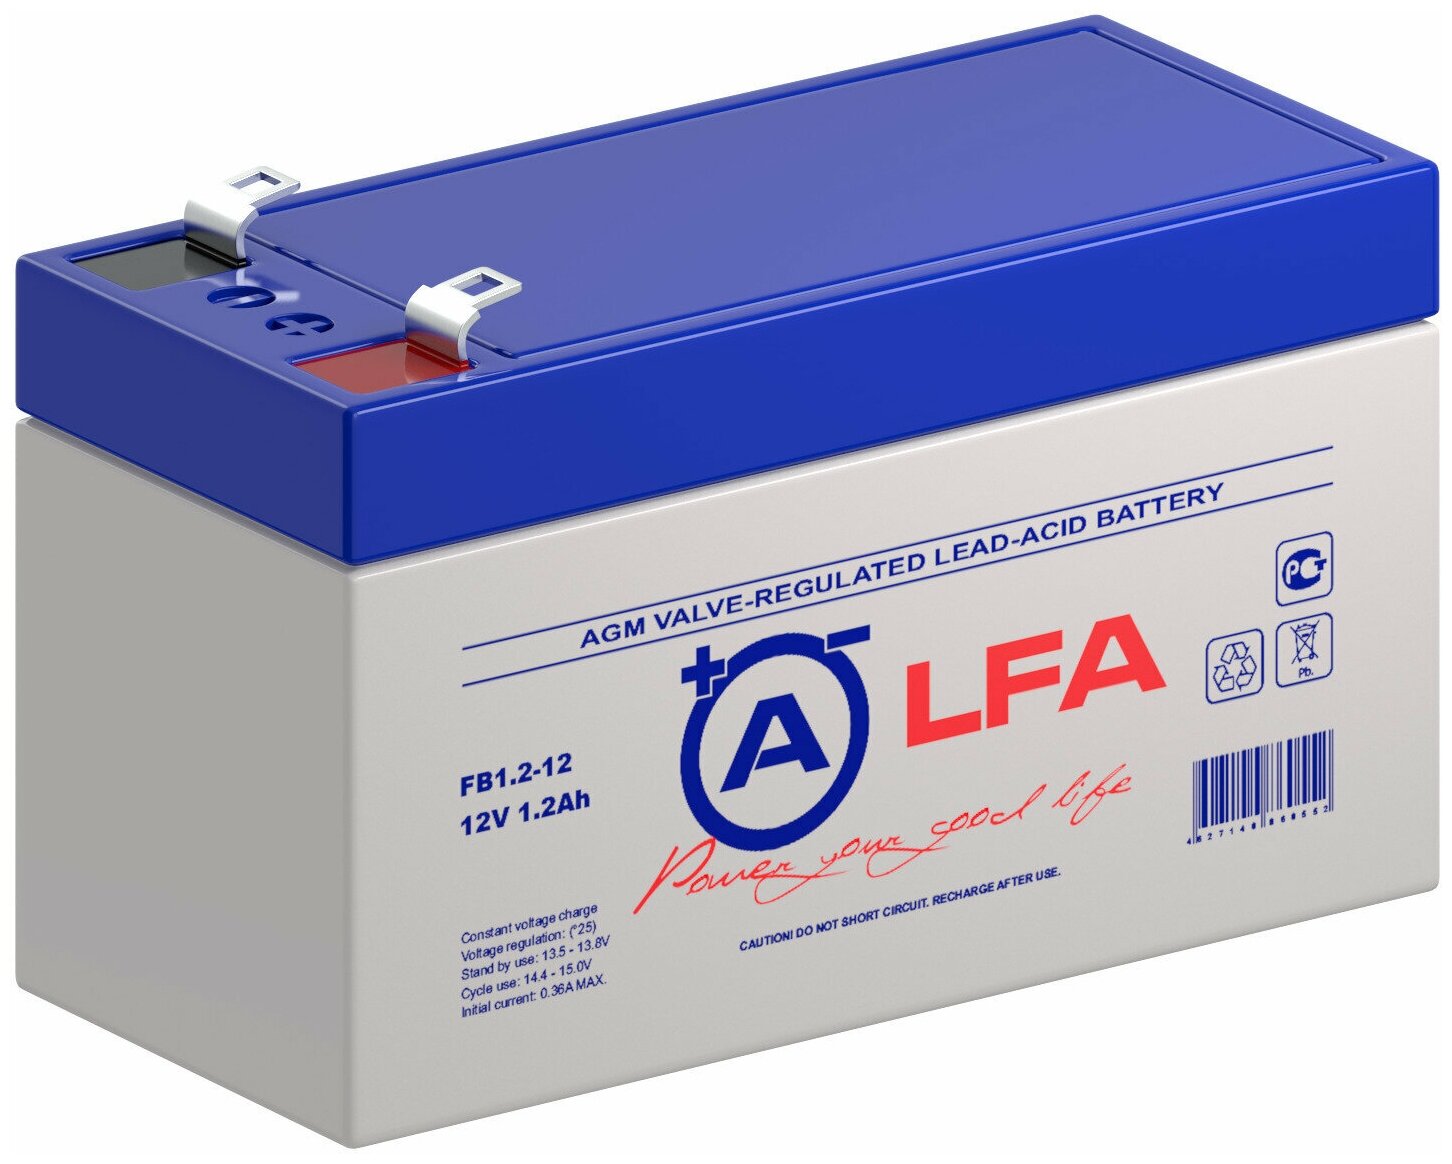 Аккумулятор ALFA FB 1.2-12 12В 1.2Ач (12V 1.2Ah) для детского электромобиля ИБП аварийного освещения кассовых терминалов весов GPS оборудования